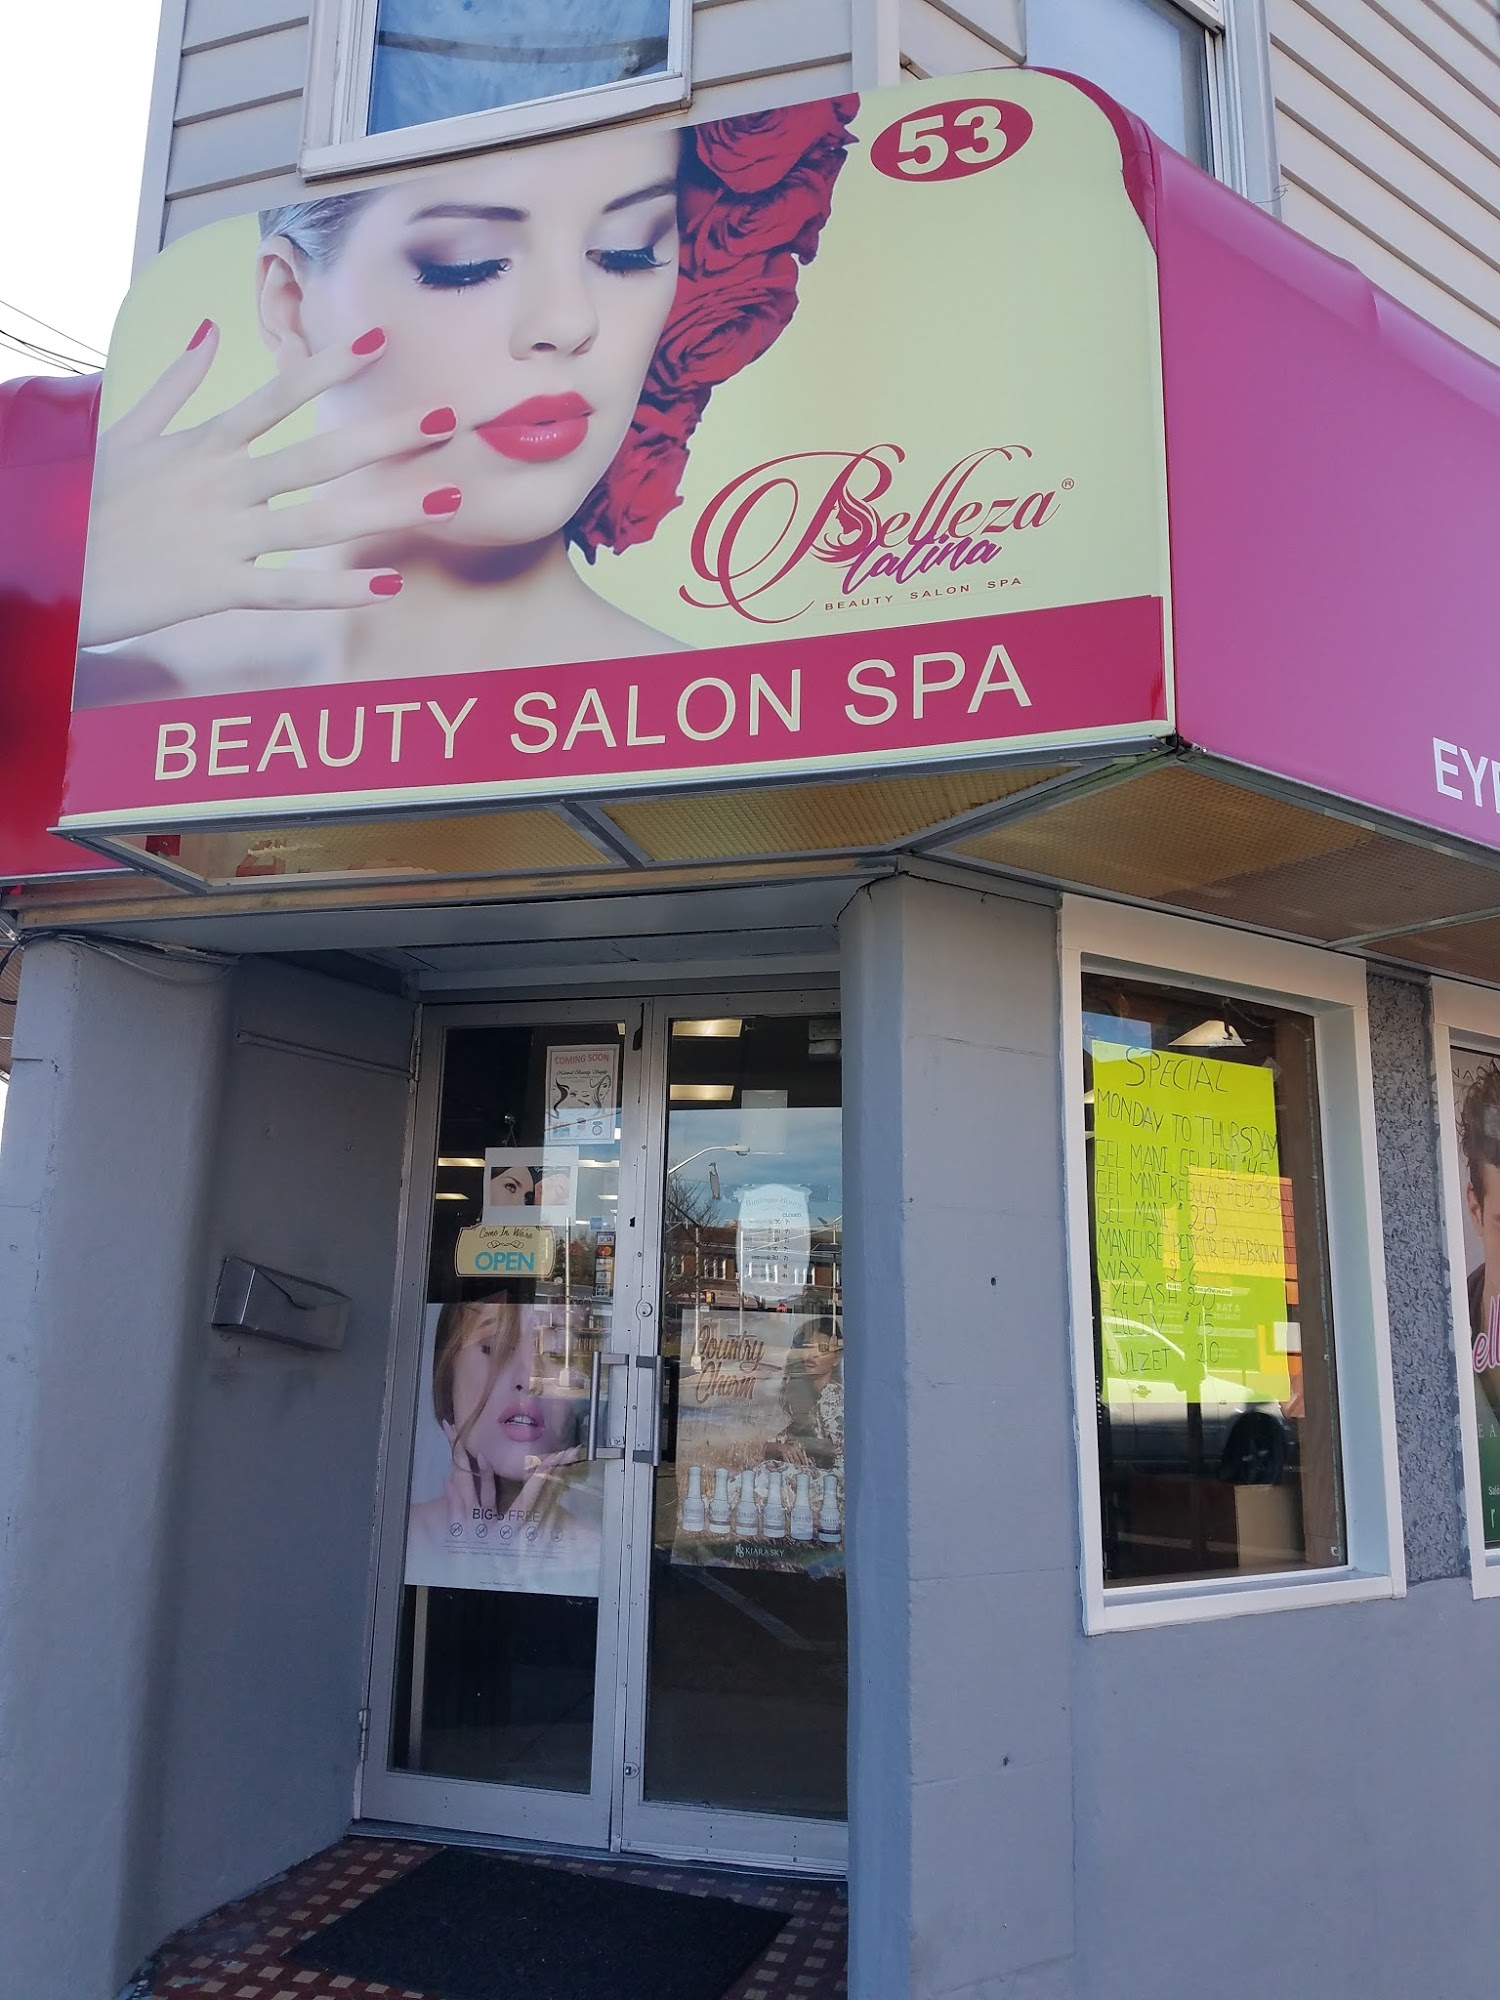 Belleza Latina beauty and spa Salon